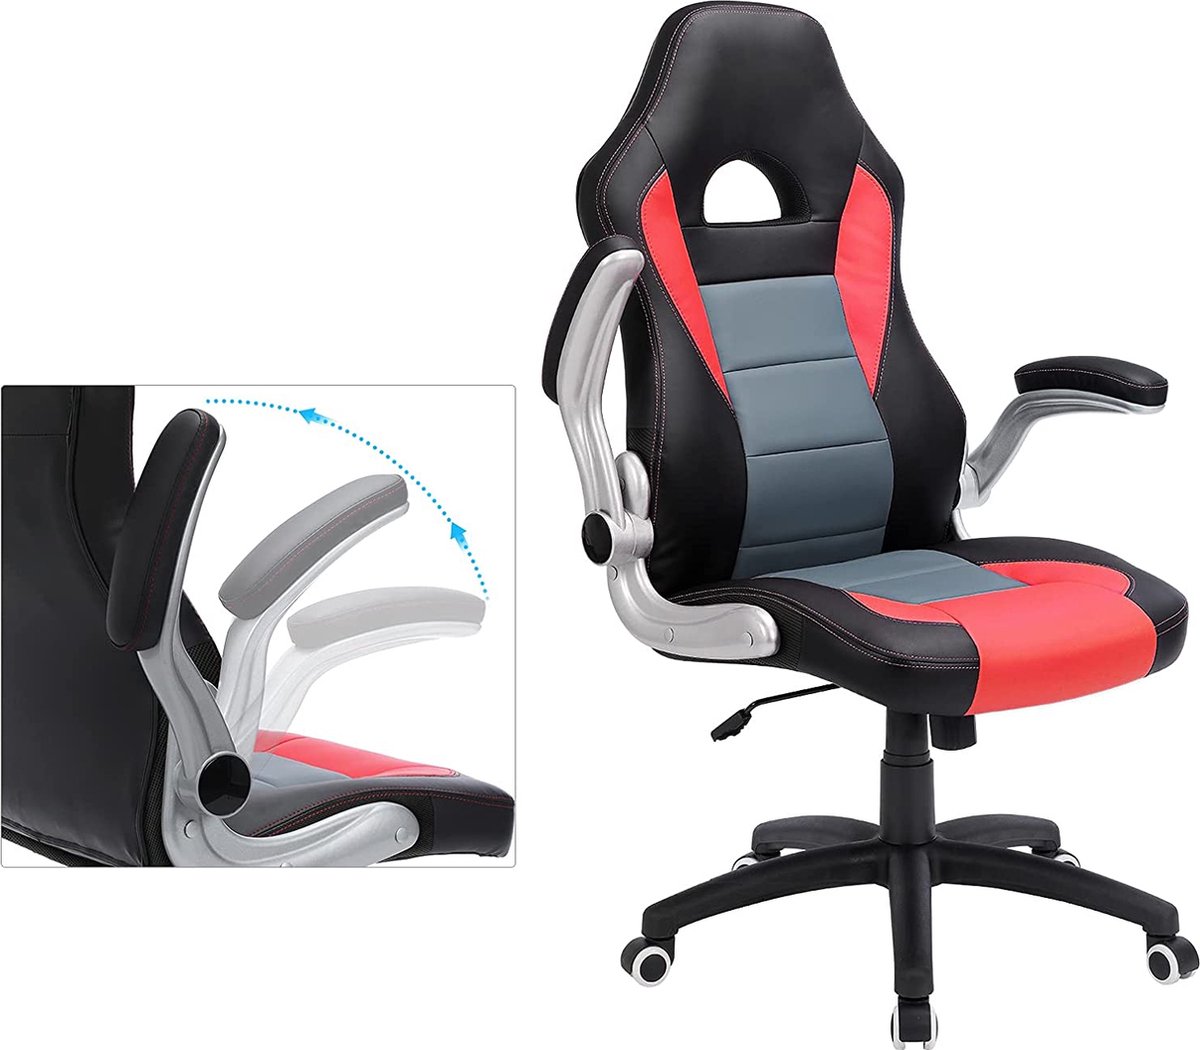 Segenn's Stylo2 bureaustoel - gamestoel - racestoel - bureaustoel - ergonomische bureaustoel - opklapbare armleuningen - wipfunctie - zwart-grijs-rood